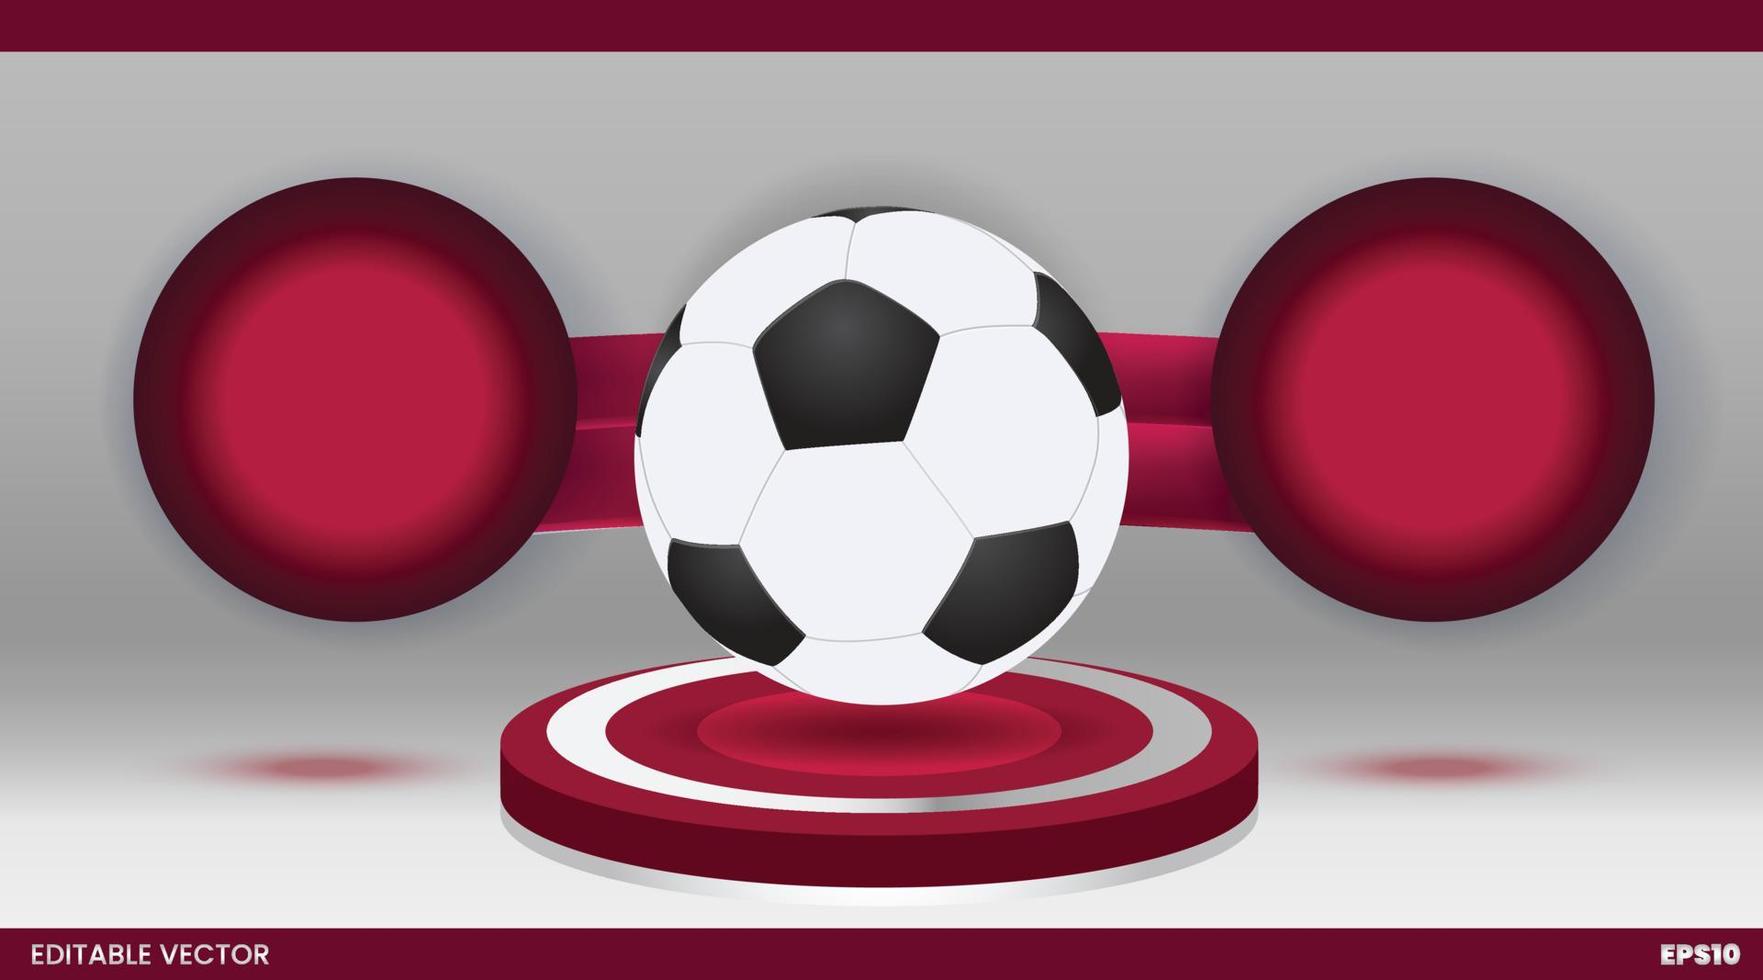 maquete de jogo de futebol e futebol modelo de banner de vetor 3d grátis  15451008 Vetor no Vecteezy